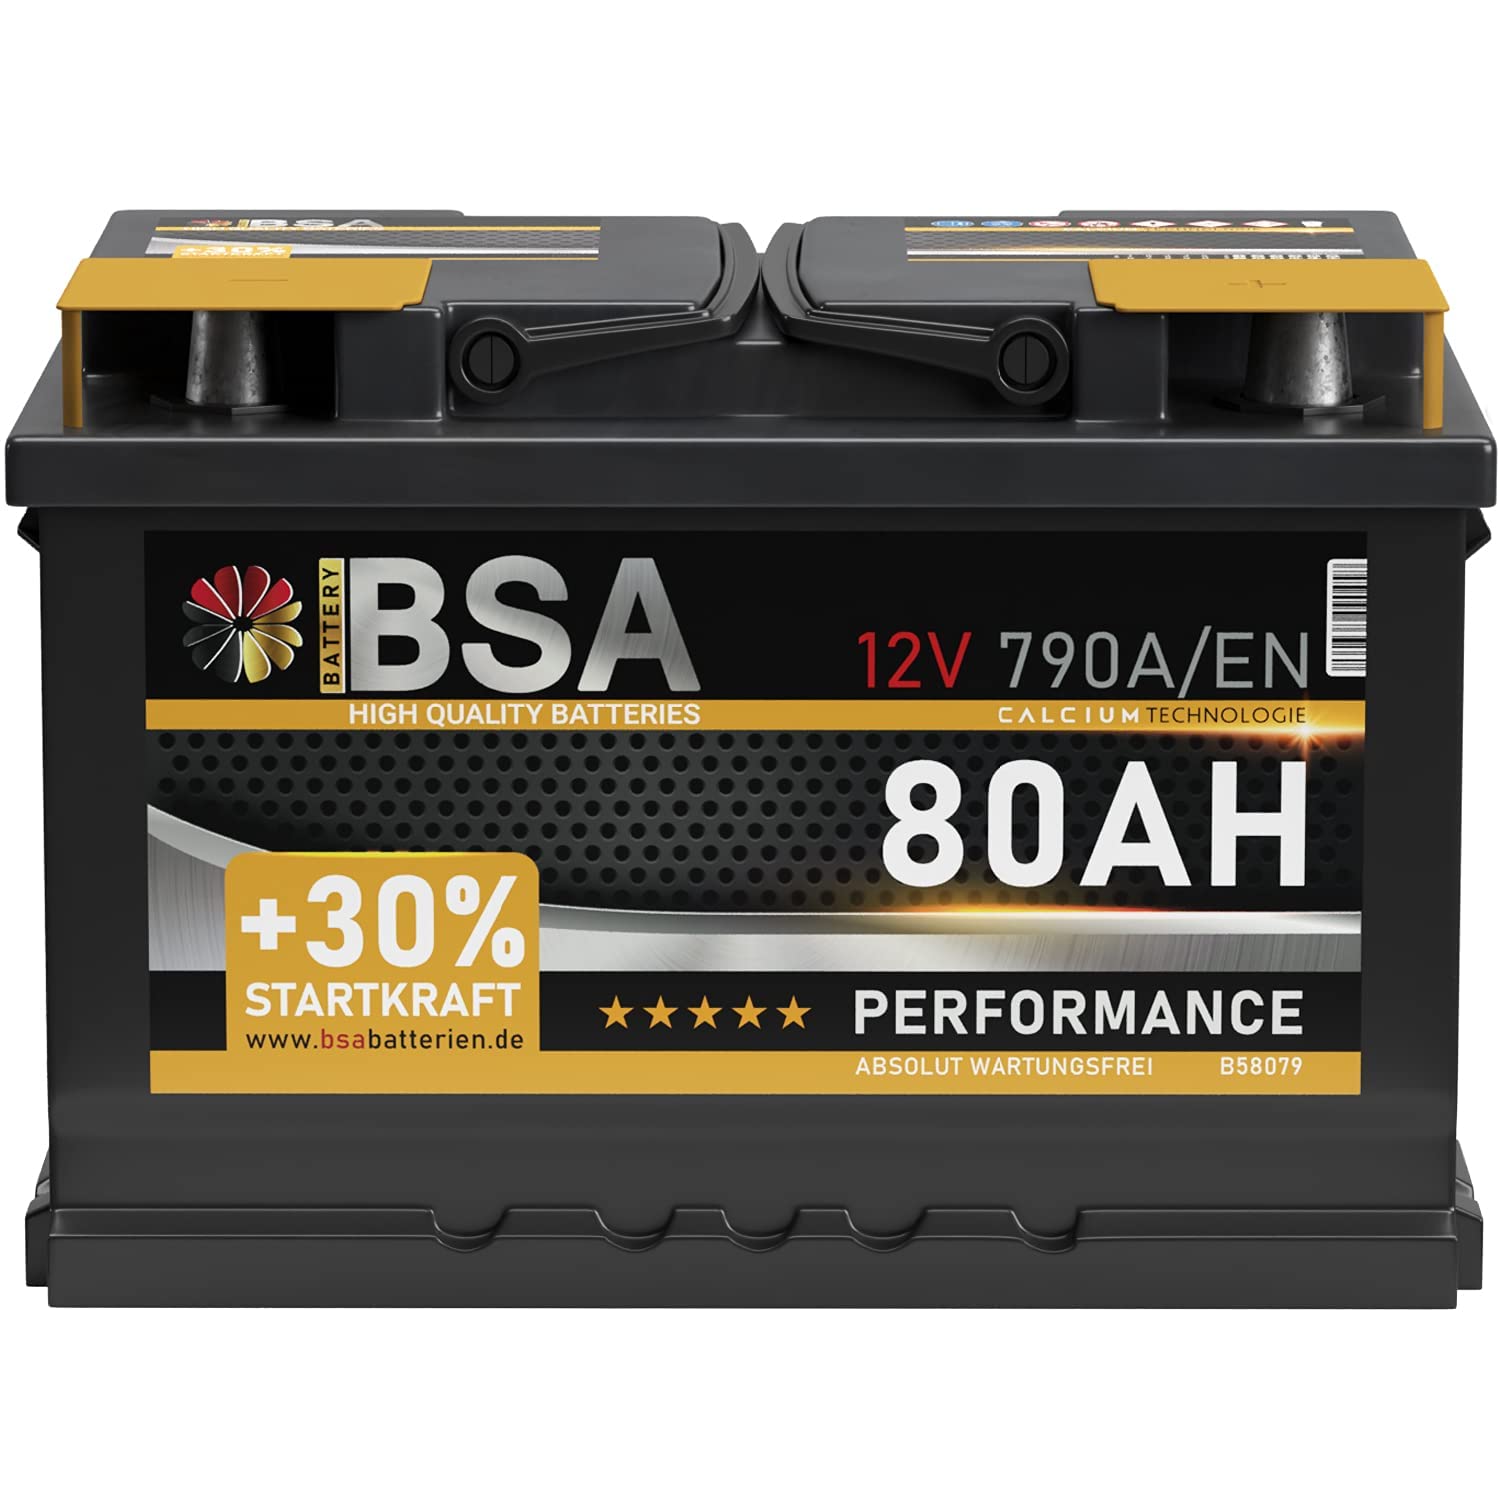 BSA Autobatterie 80AH 12V Batterie 790A/EN +30% Startleistung ersetzt 70Ah 72Ah 74Ah 75Ah 77Ah